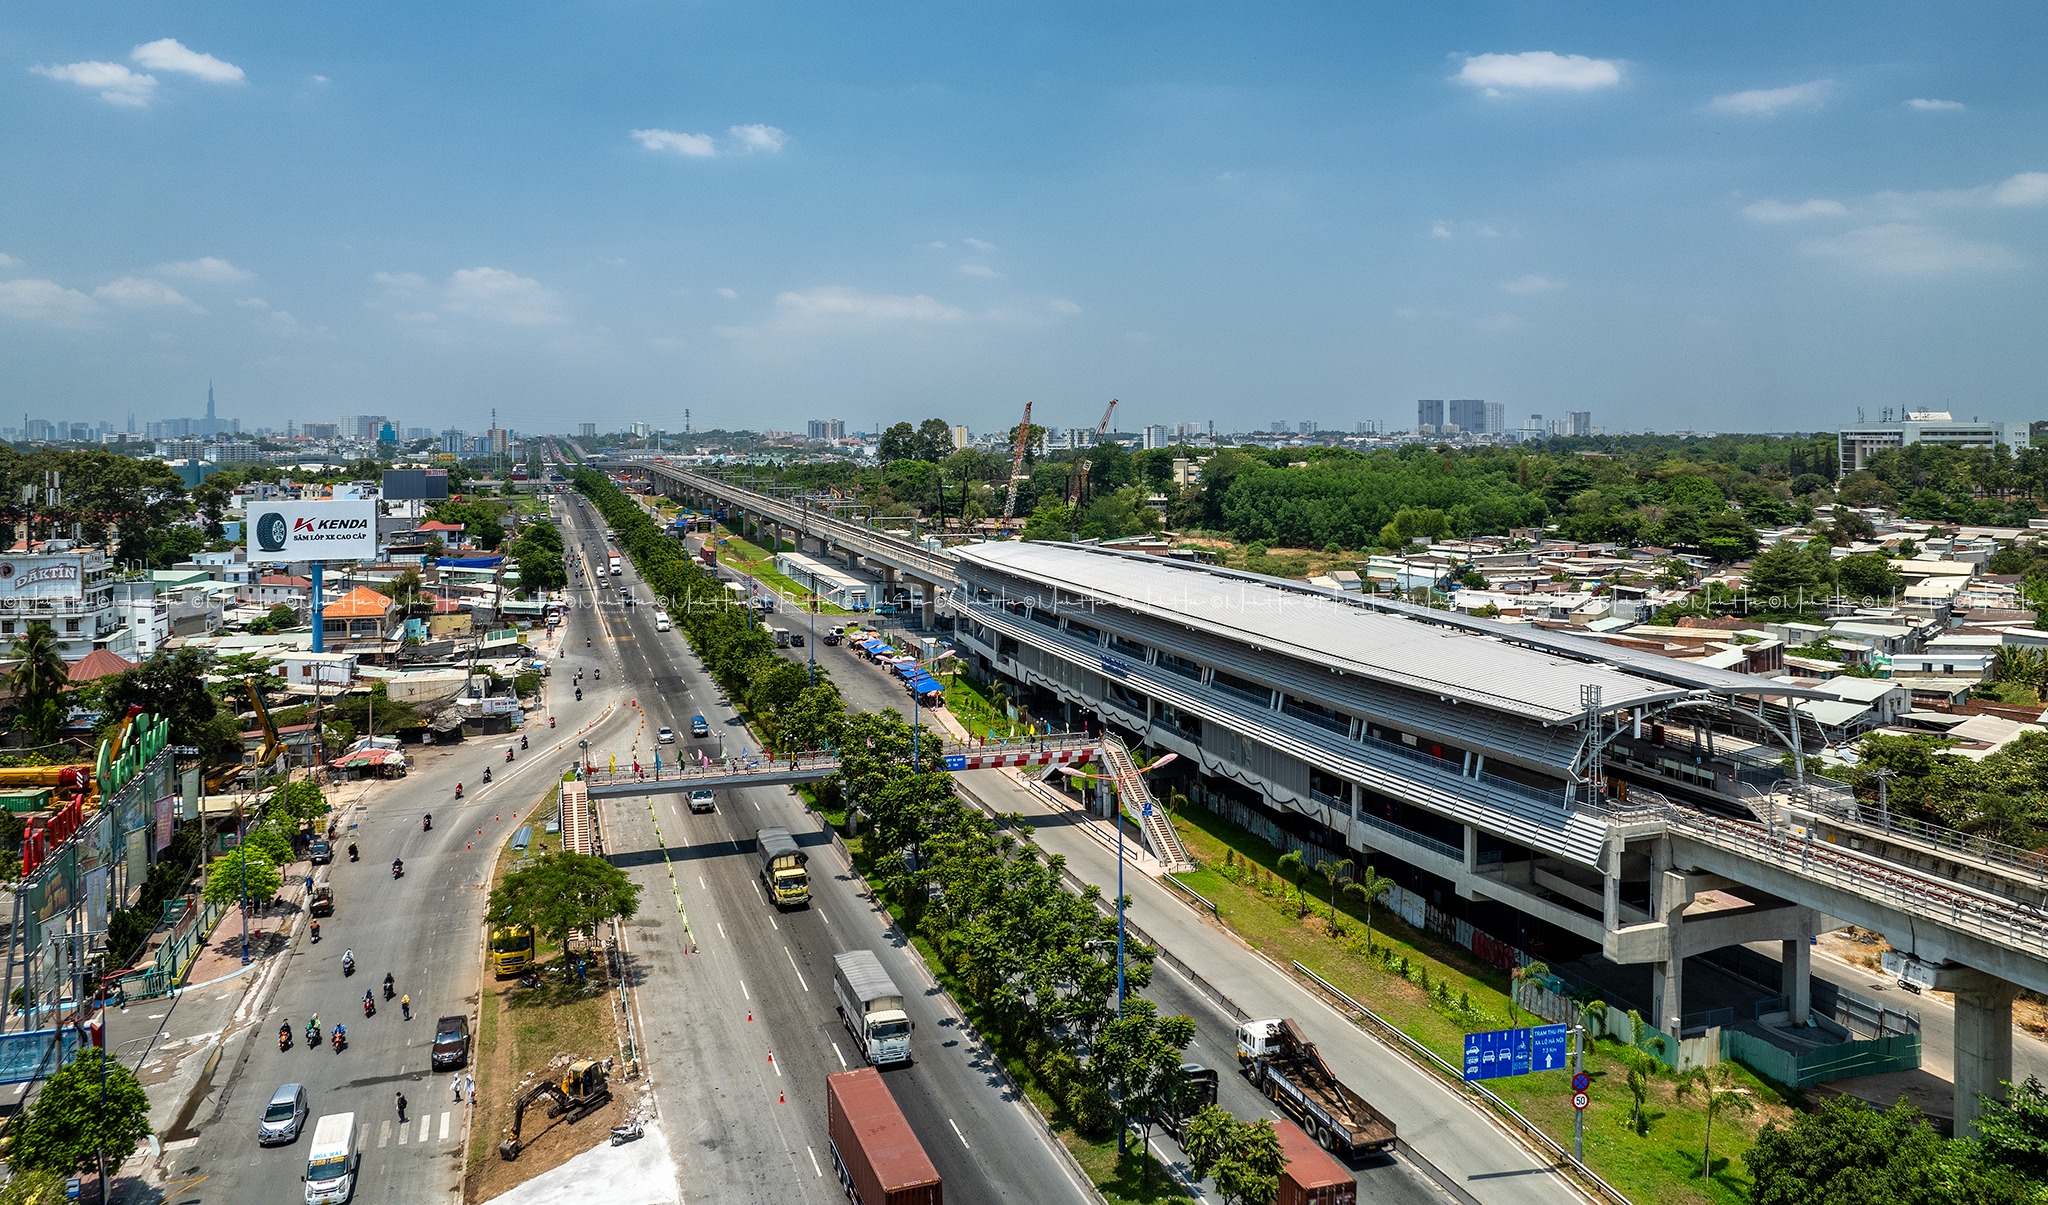 Ga Đại học Quốc gia là ga kết nối với khuôn viên của các trường đại học trực thuộc Đại học Quốc gia TP.HCM. Chiều dài của ga Đại học Quốc gia là 137,5m, chiều rộng 22m, cao 19,45m (ga loại A)